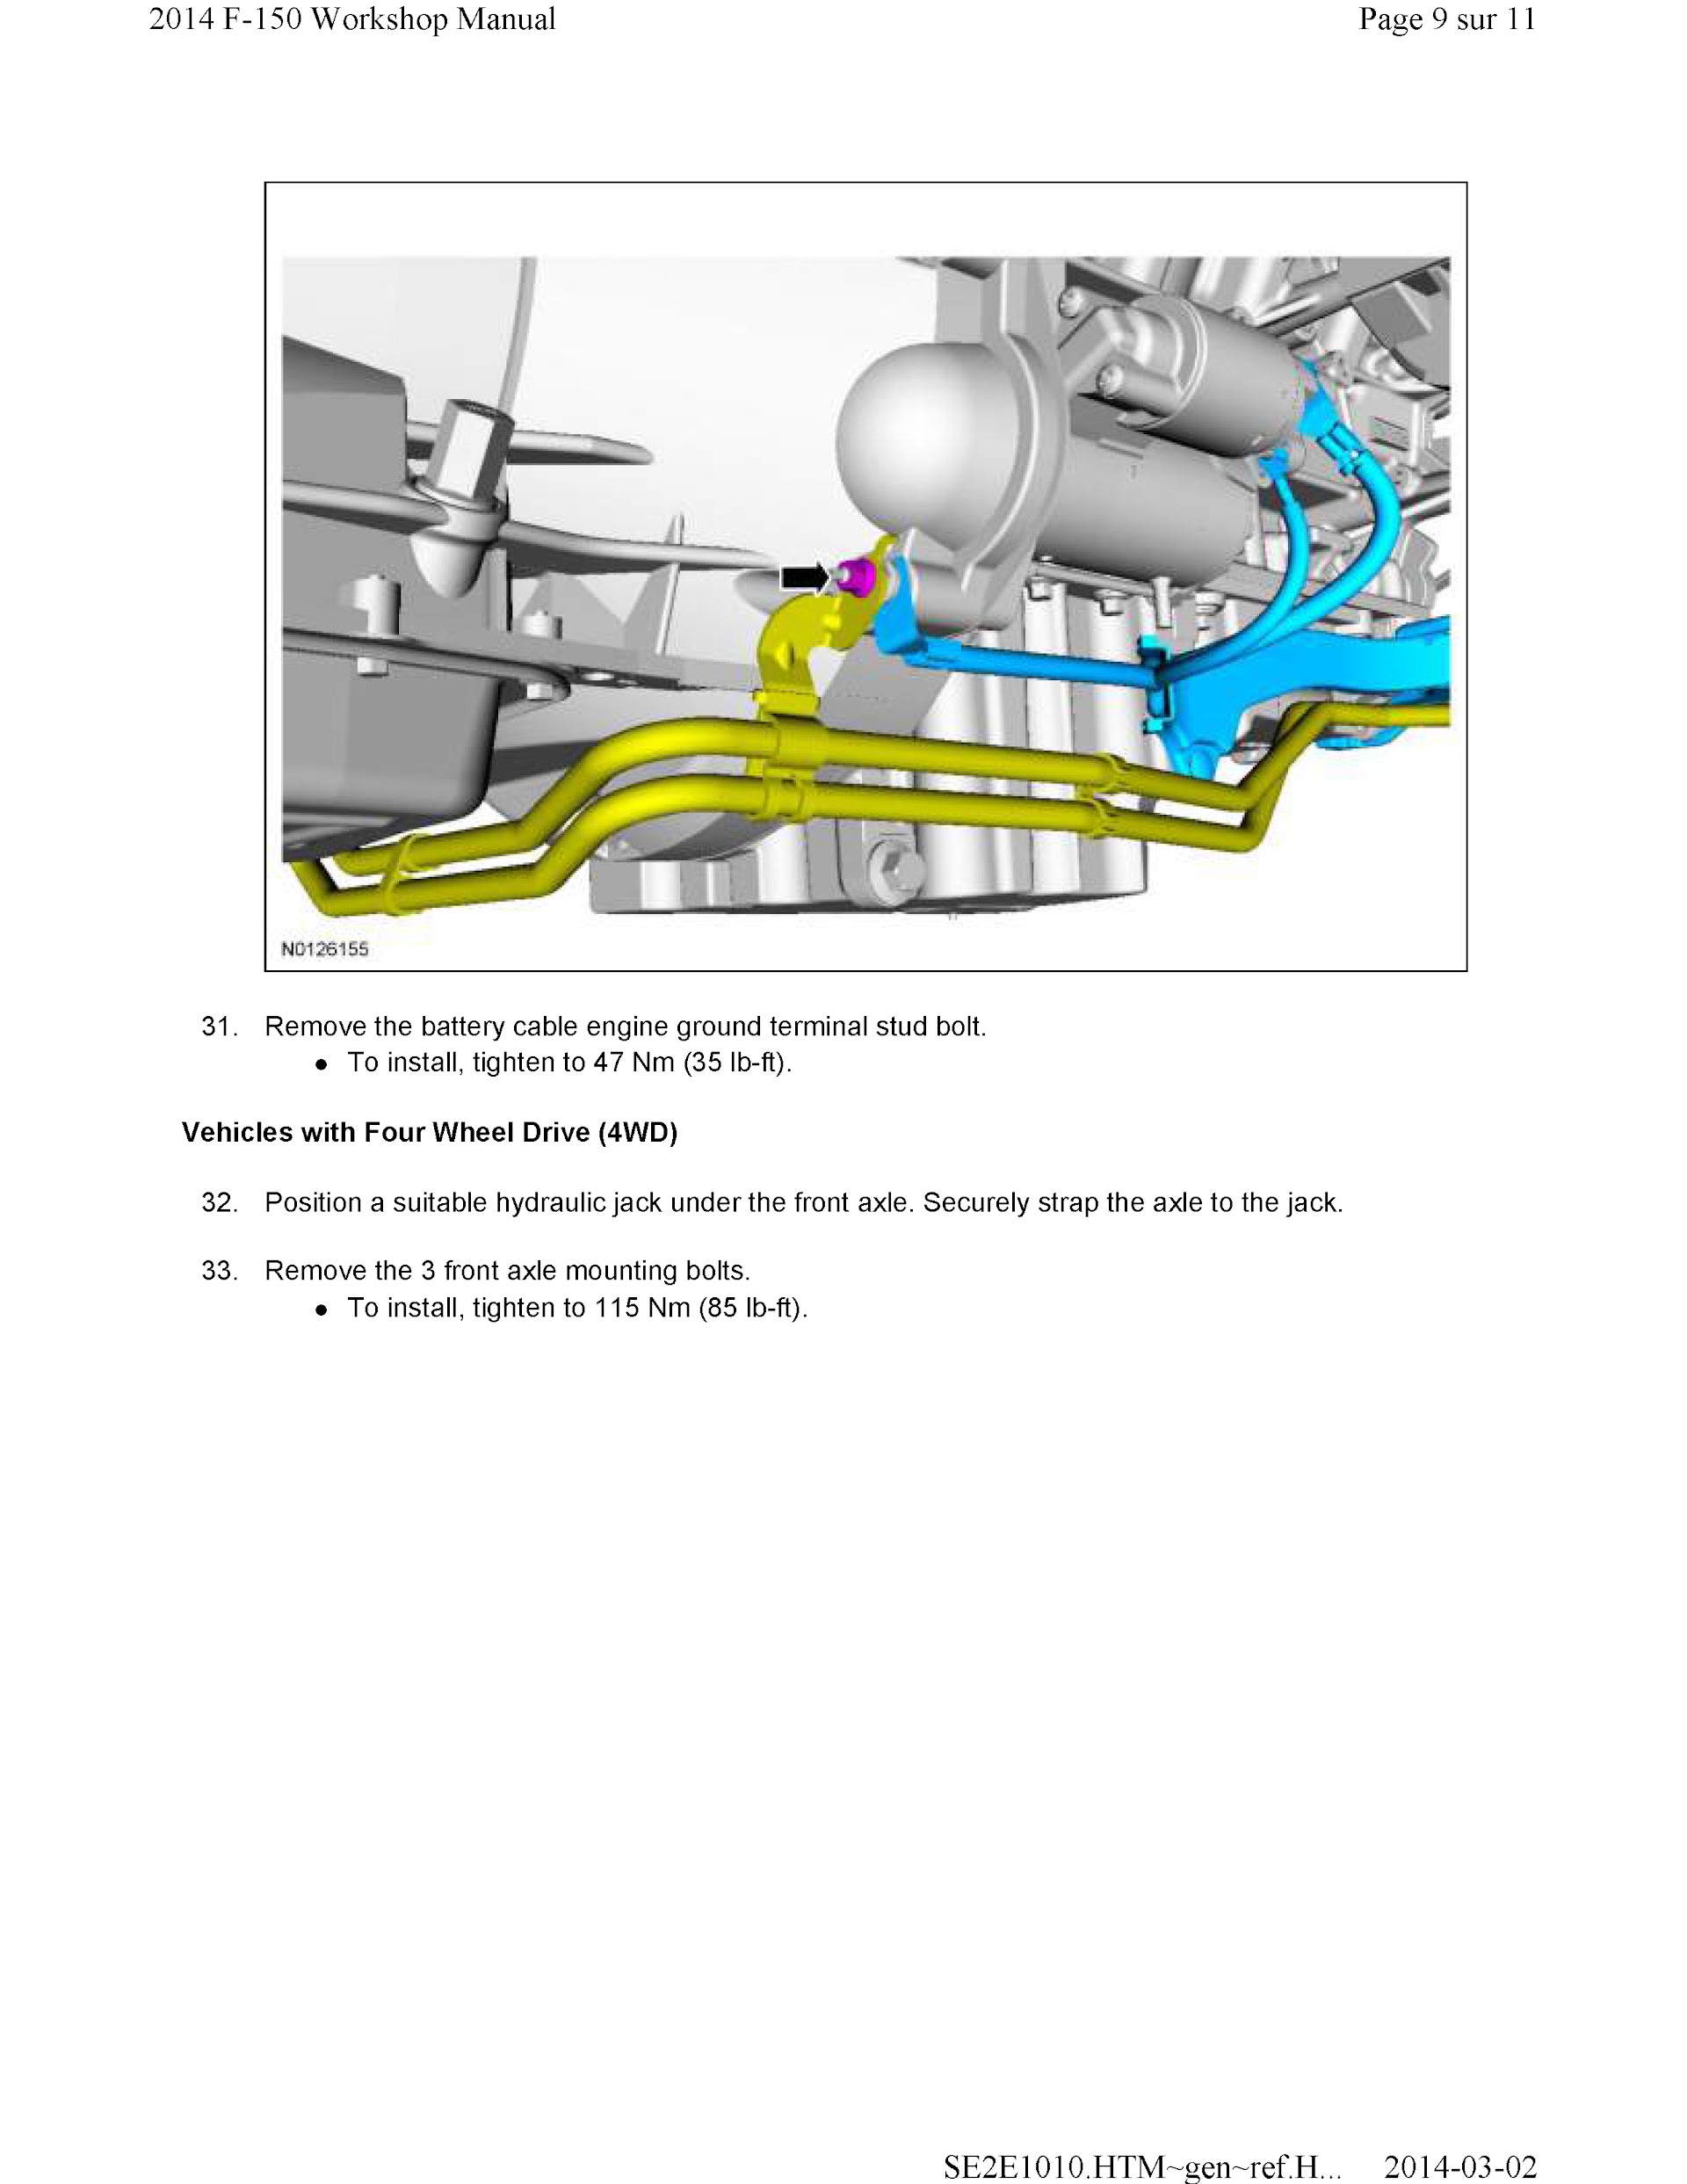 2011-2014 Ford F-150 Repair Manual